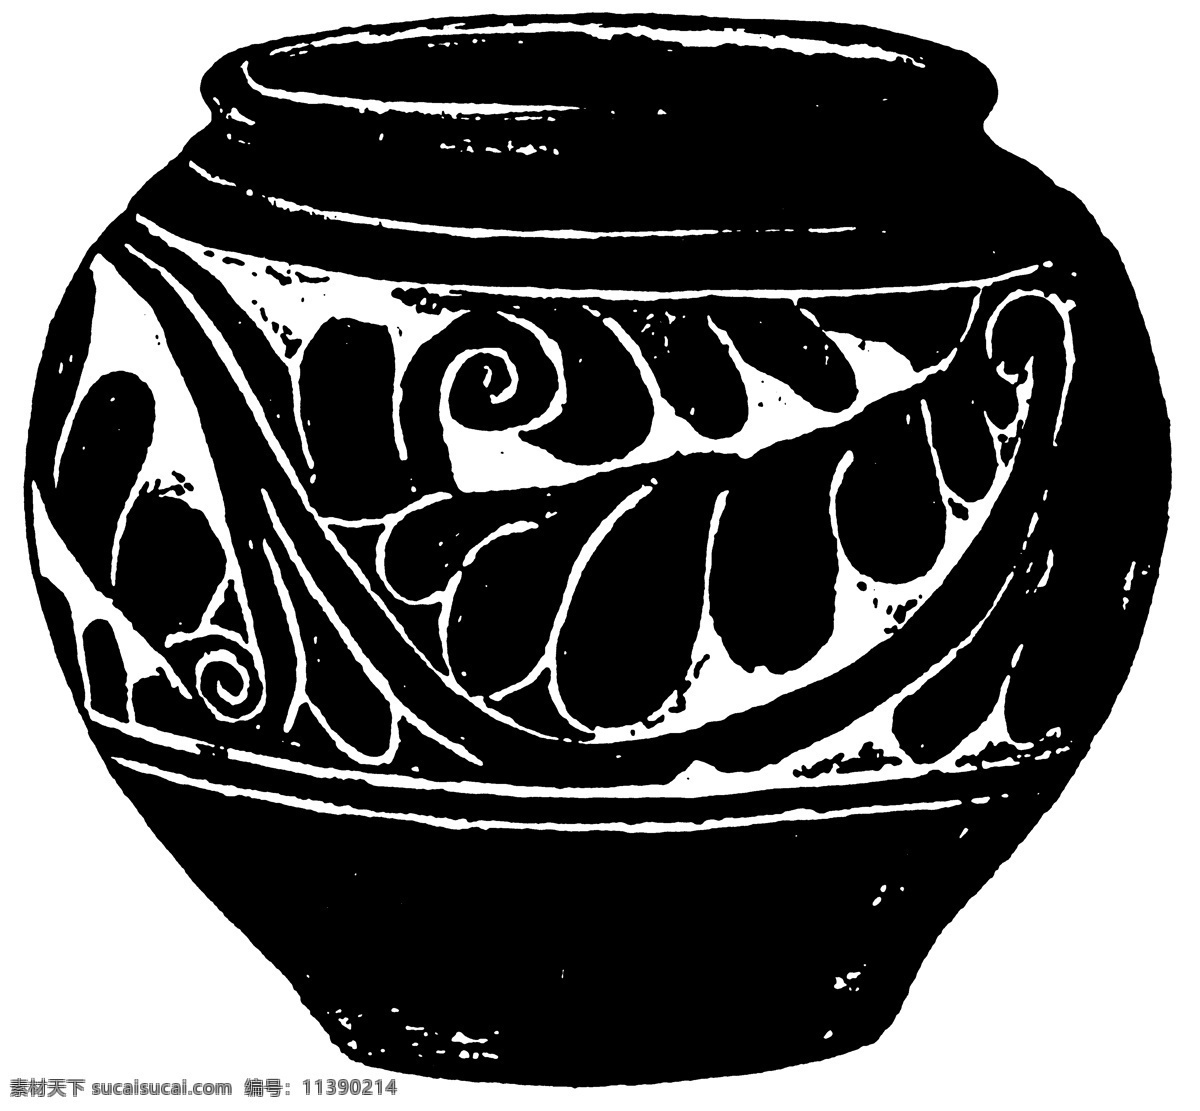 器物图案 两宋时代图案 中国 传统 图案 387 中国传统图案 设计素材 装饰图案 书画美术 黑色